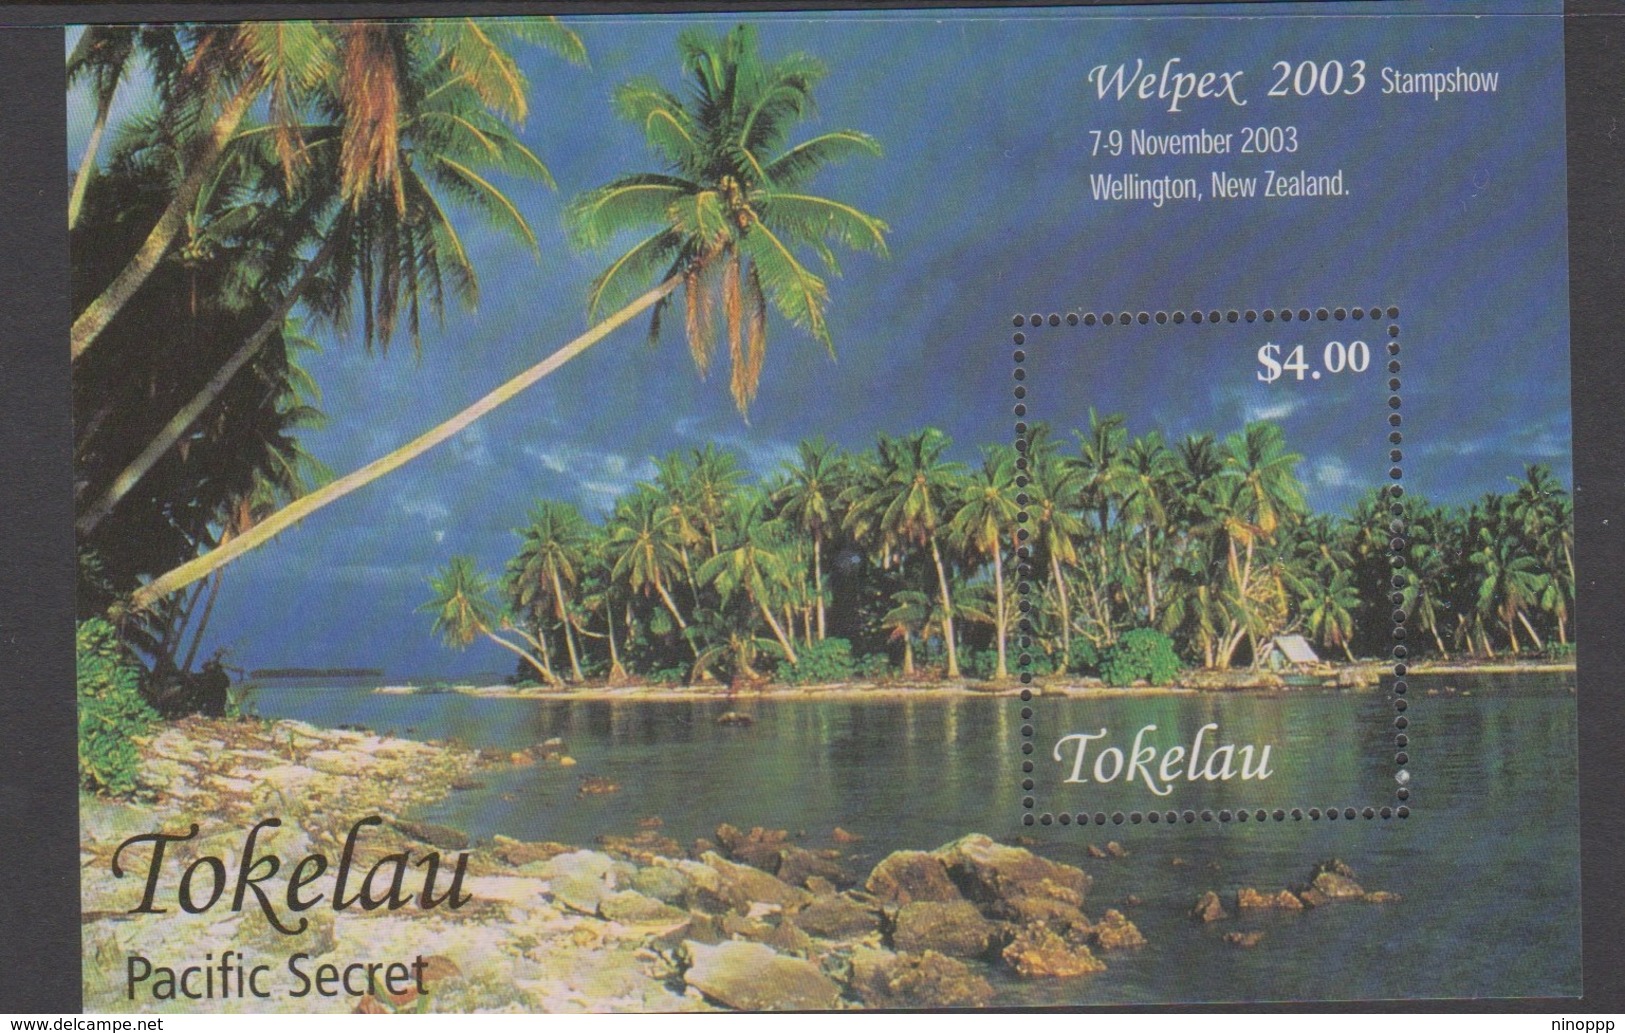 Tokelau SG MS 354 2003 Welpex Miniature Sheet,mint Never Hinged - Tokelau